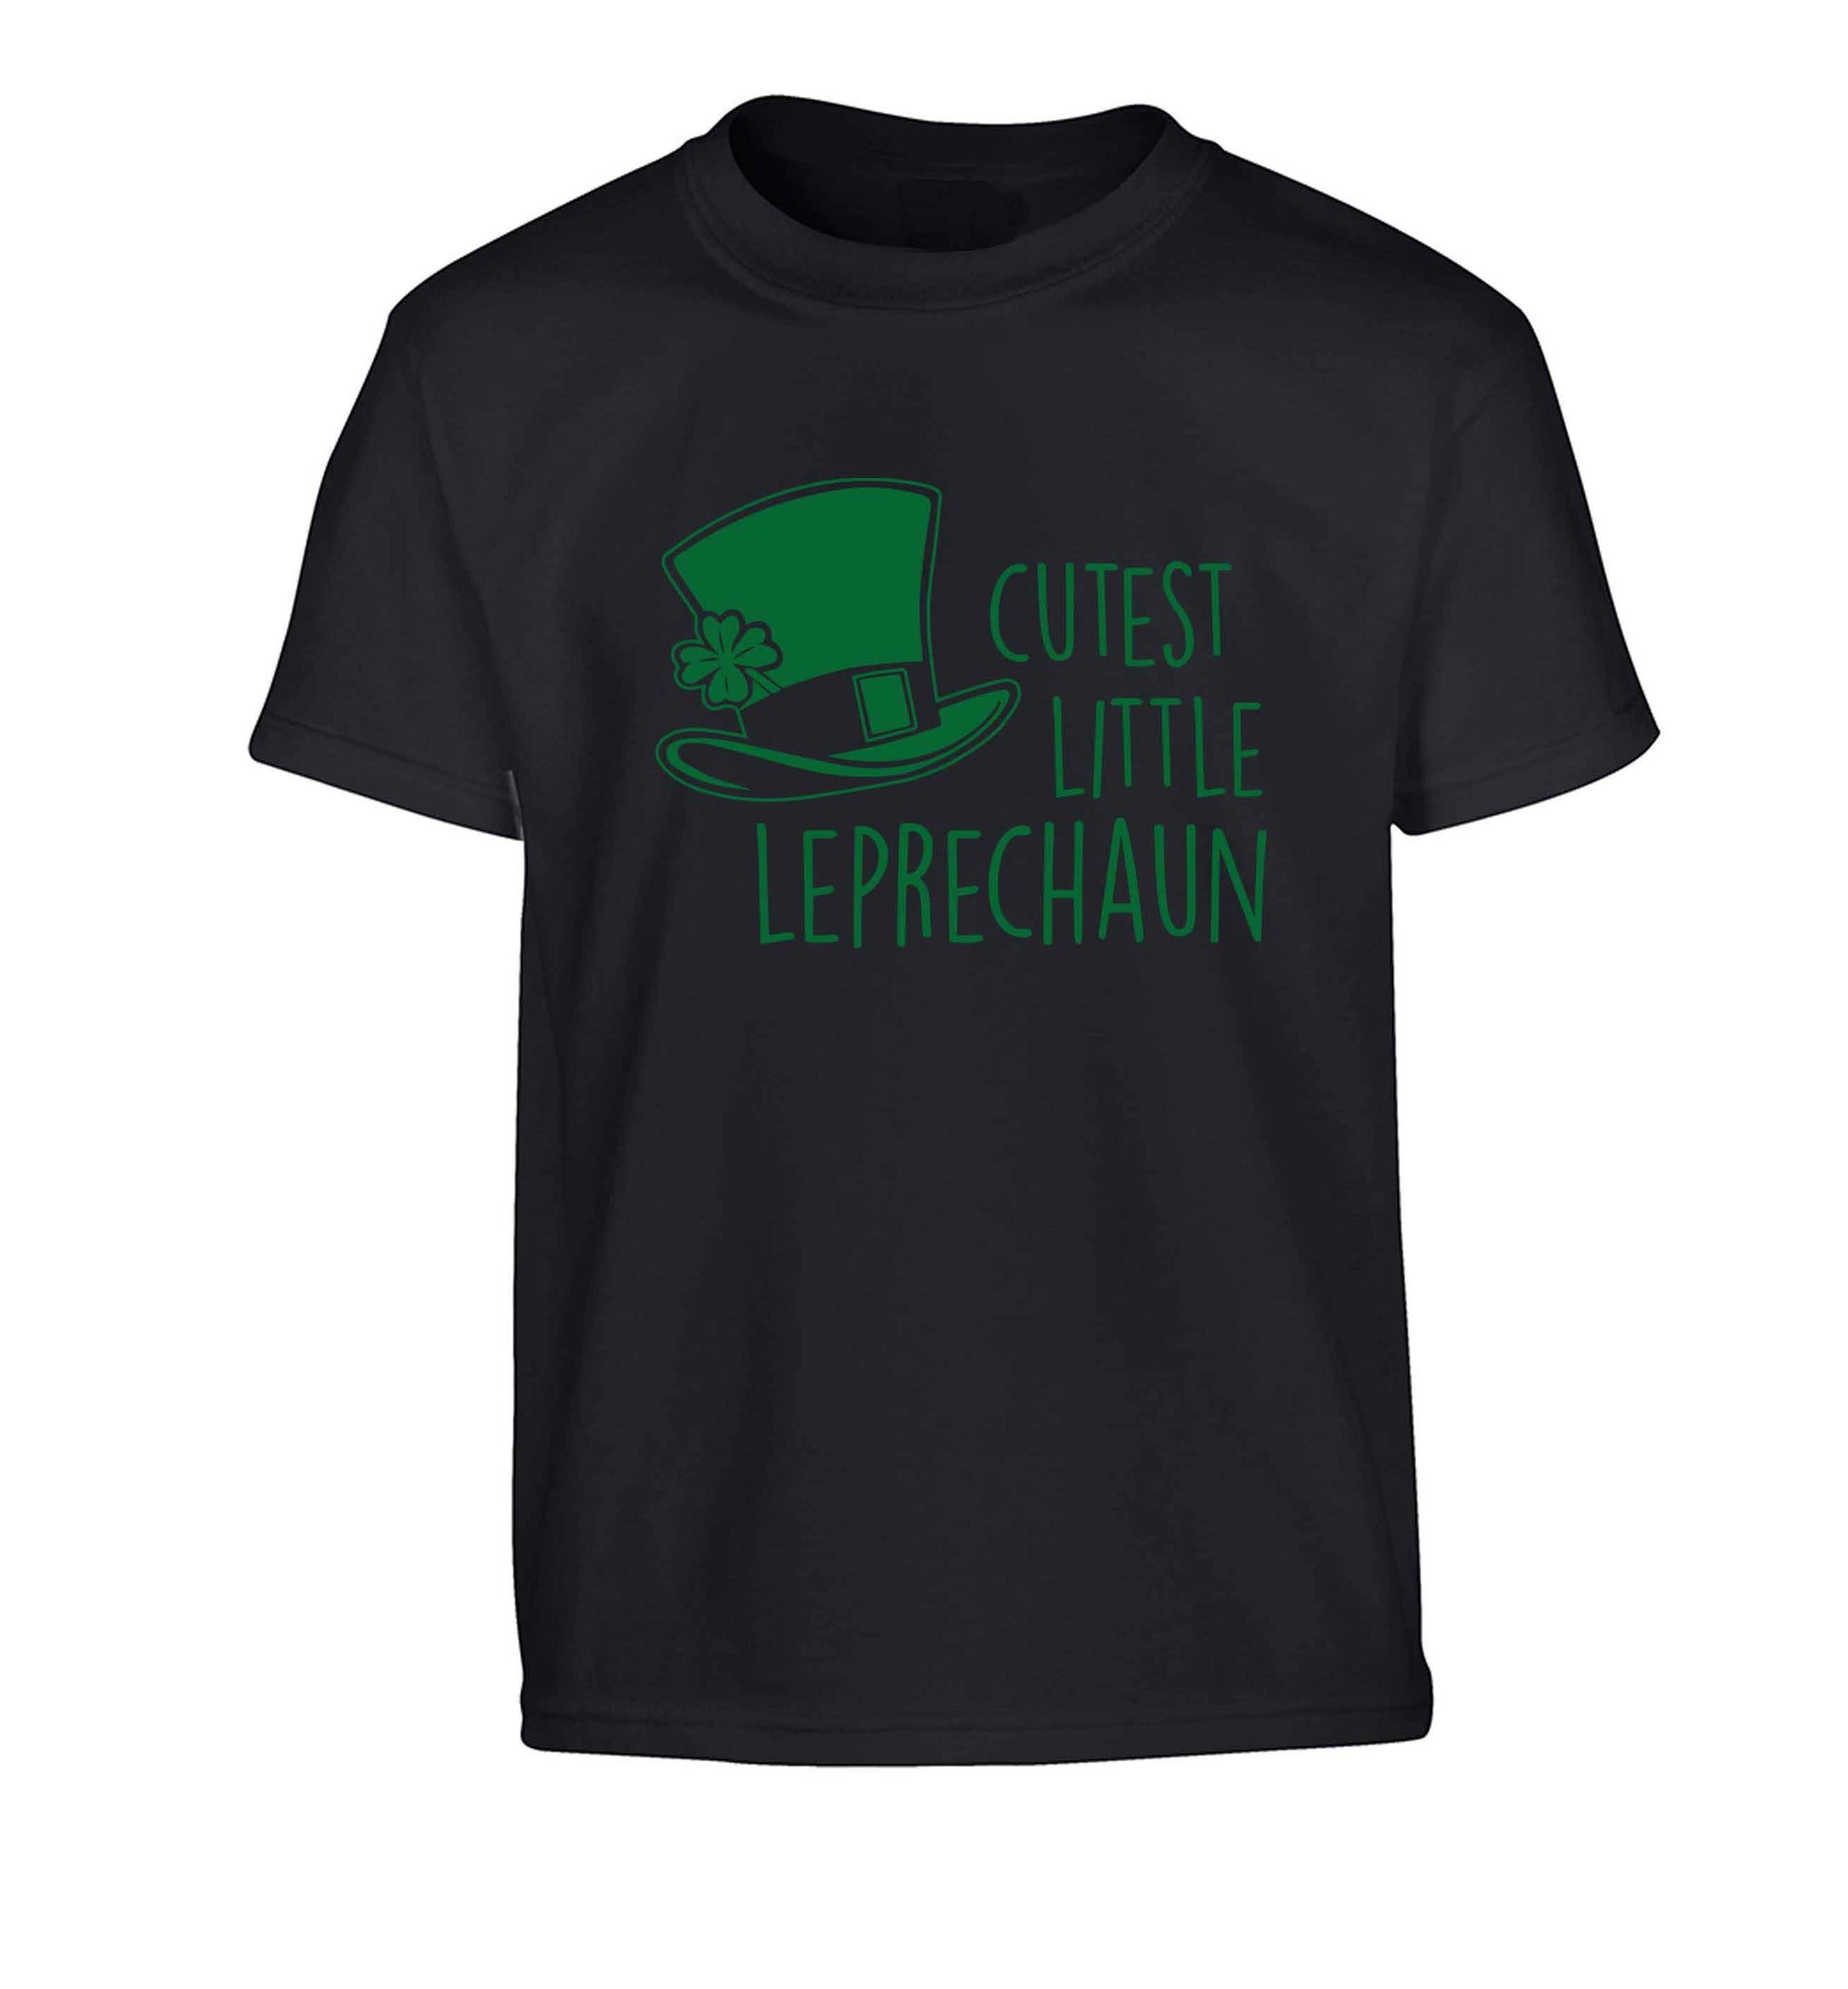 Cutest little leprechaun Children's black Tshirt 12-13 Years